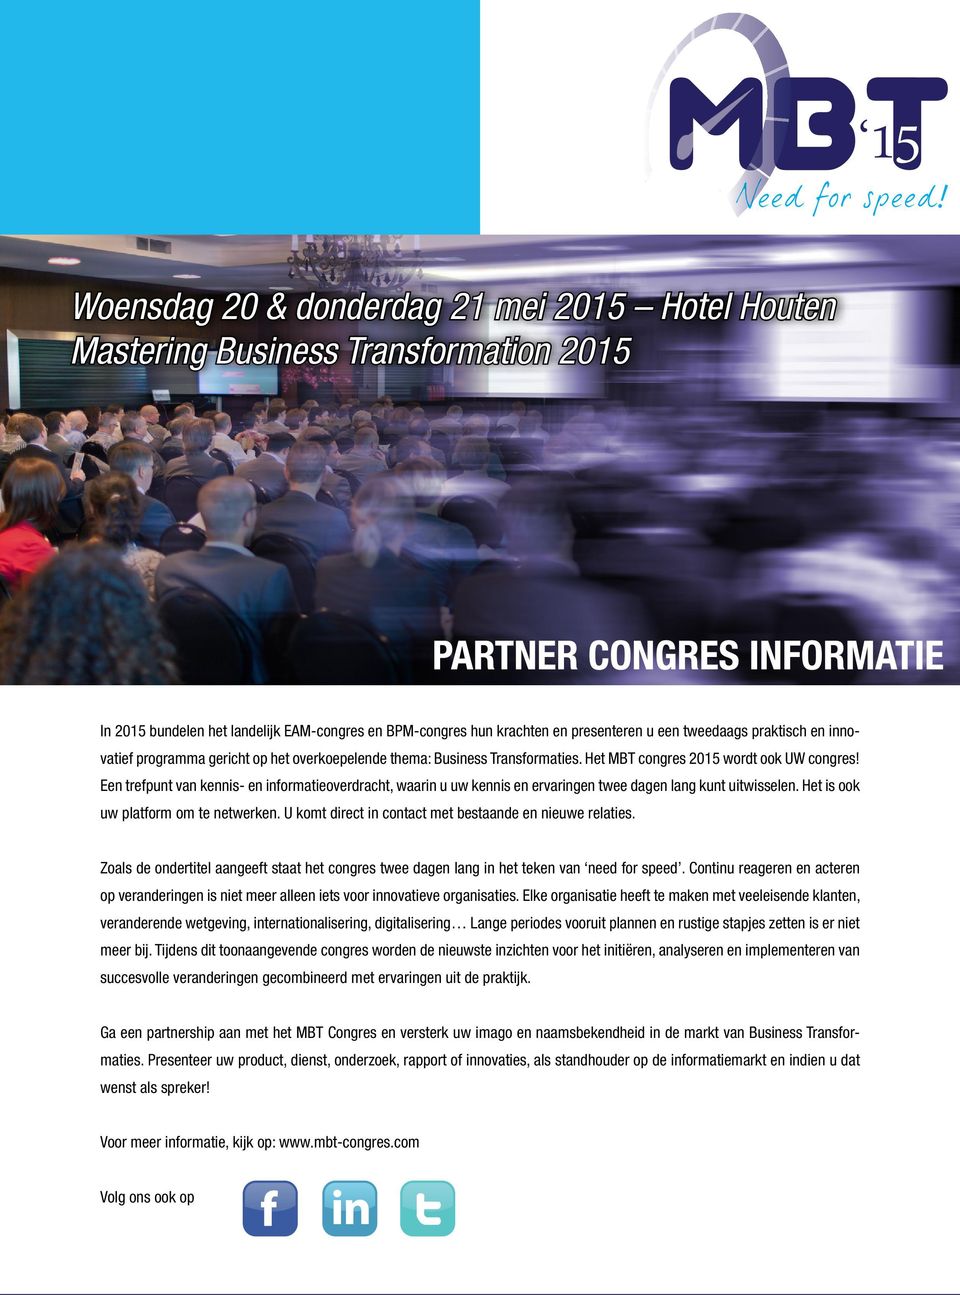 Het MBT congres 2015 wordt ook UW congres Een trefpunt van kennis- en informatieoverdracht, waarin u uw kennis en ervaringen twee dagen lang kunt uitwisselen. Het is ook uw platform om te netwerken.